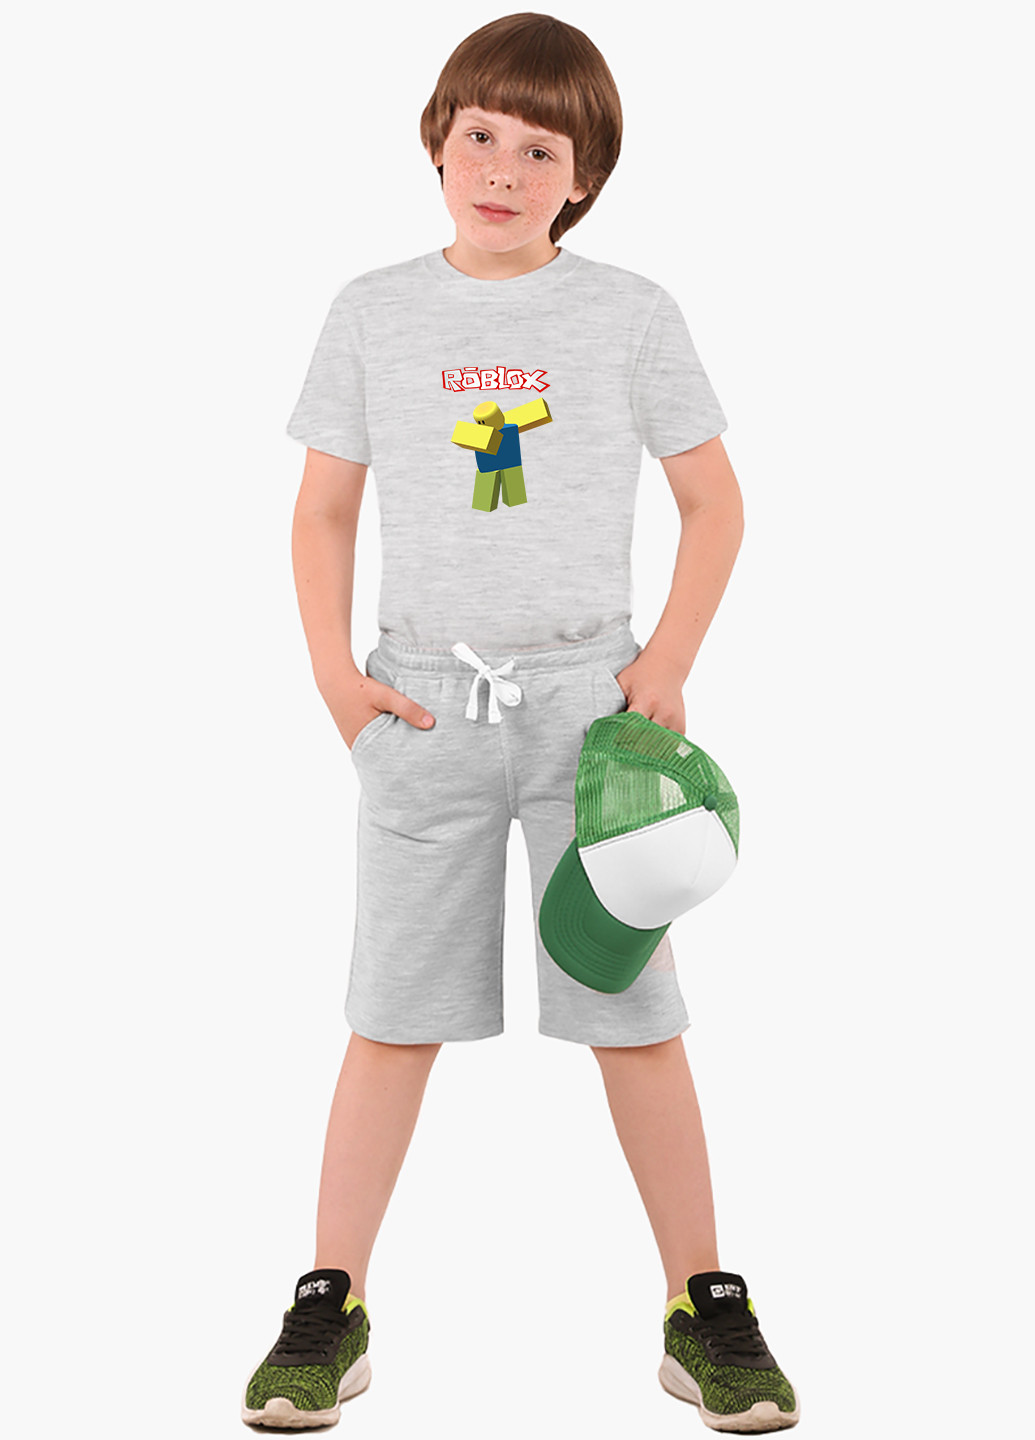 Світло-сіра демісезонна футболка дитяча роблокс (roblox) (9224-1707) MobiPrint